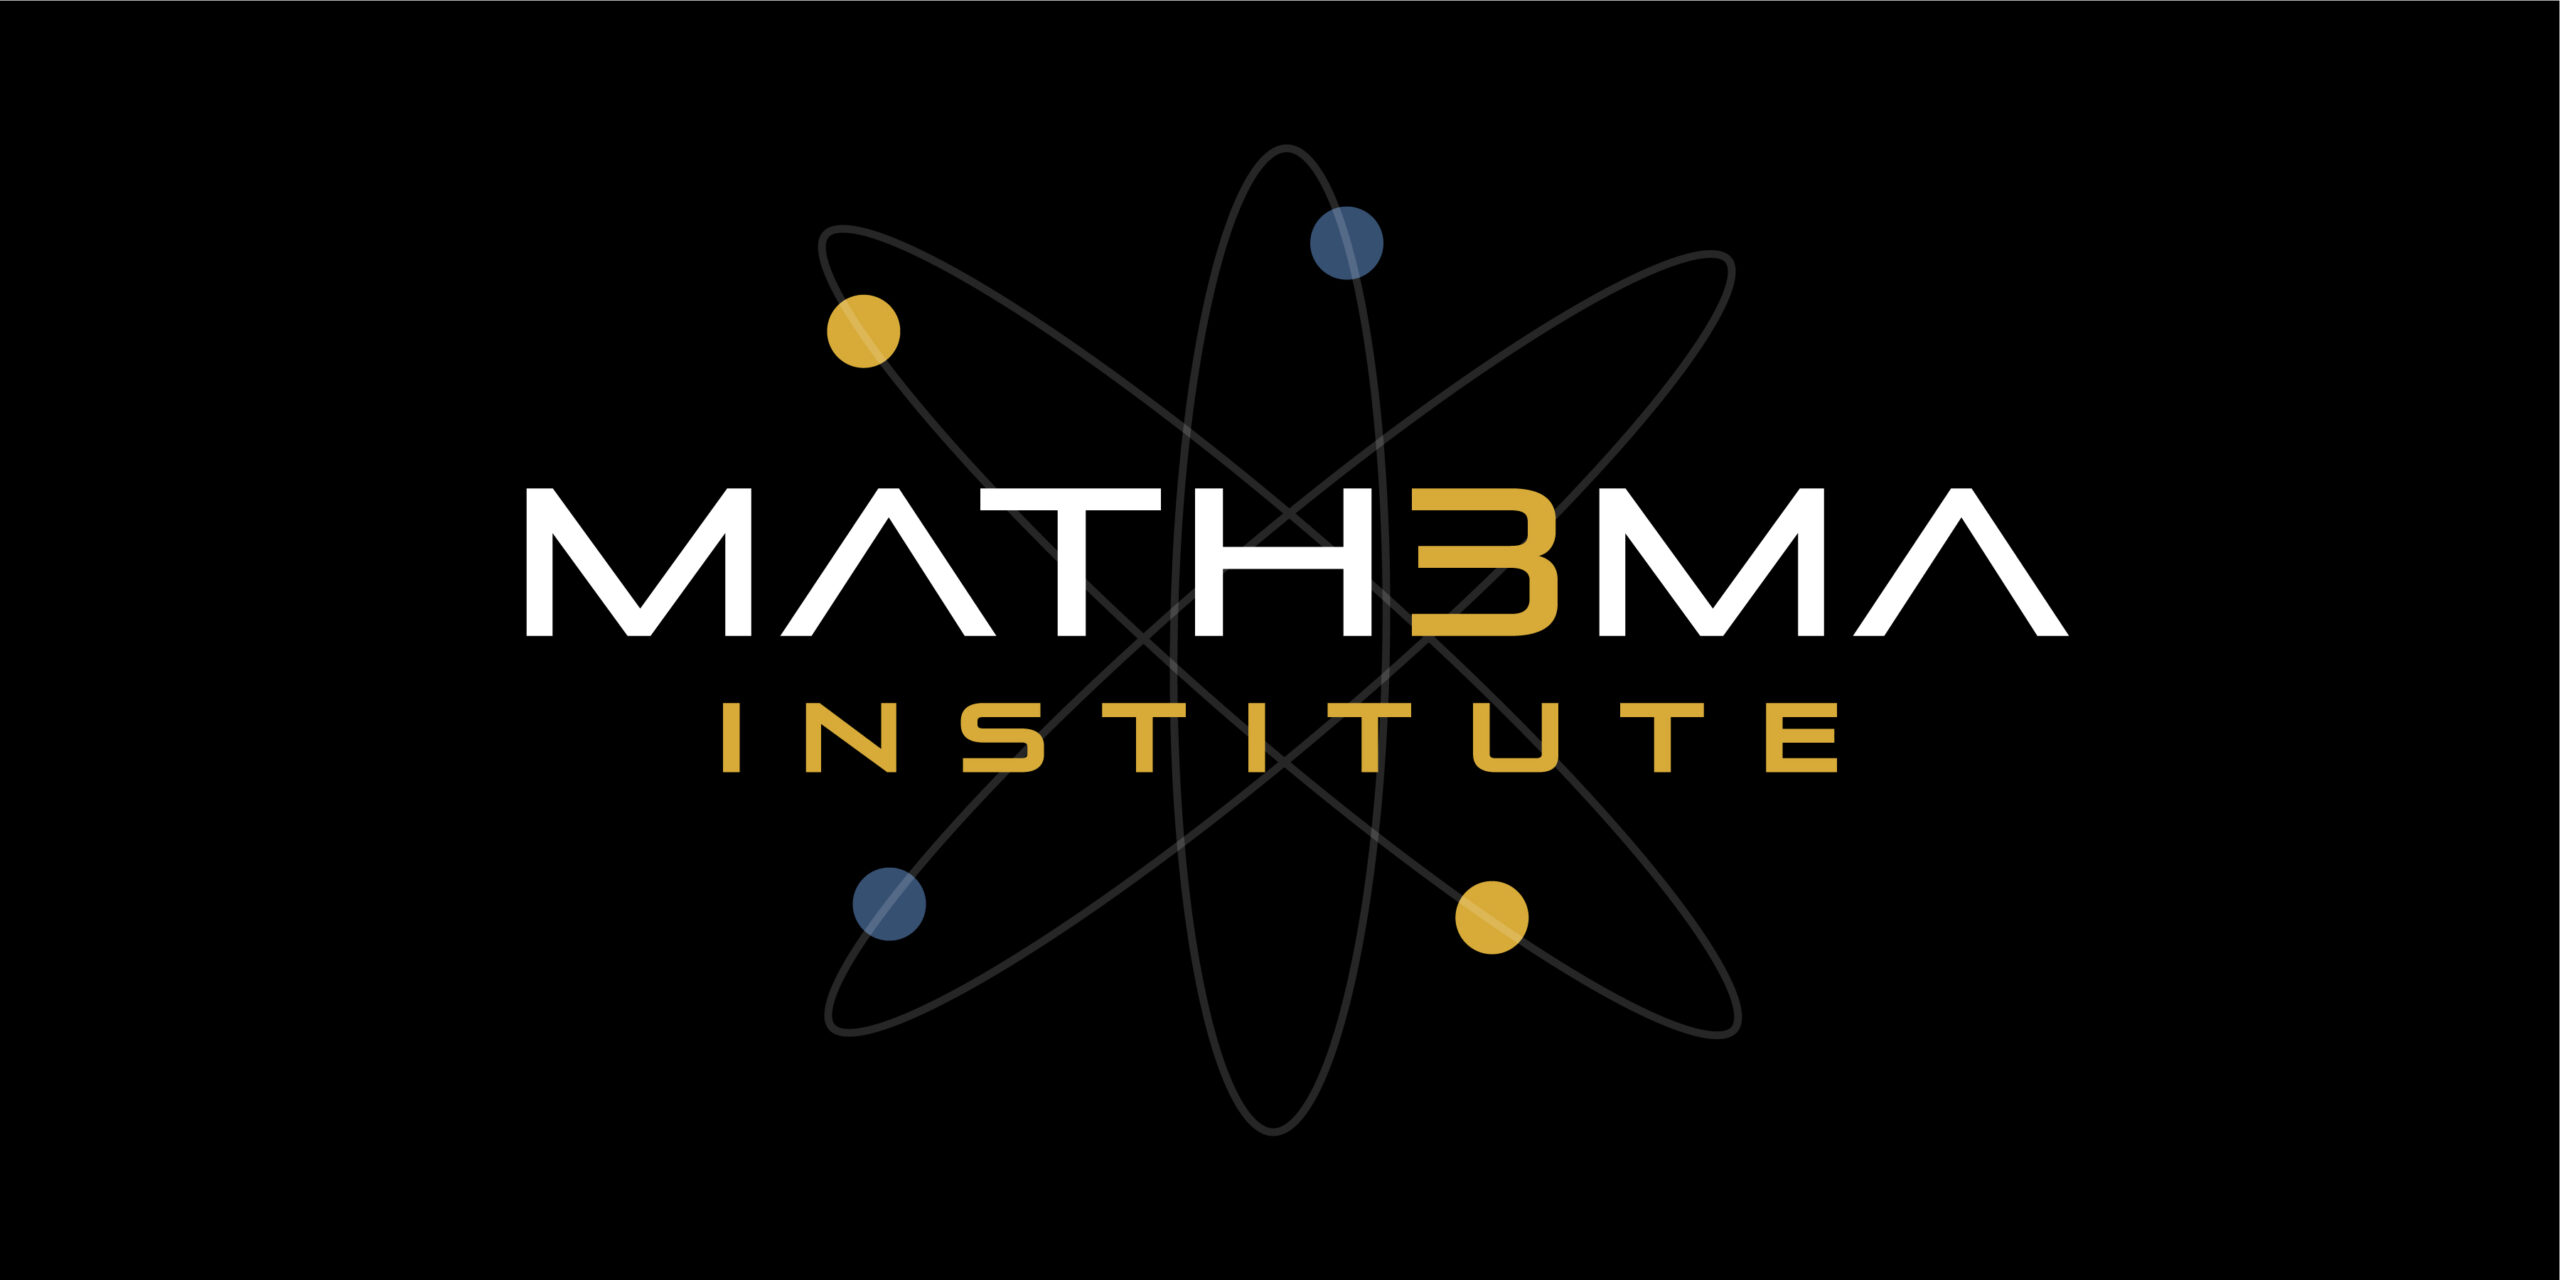 The Mathema Institute